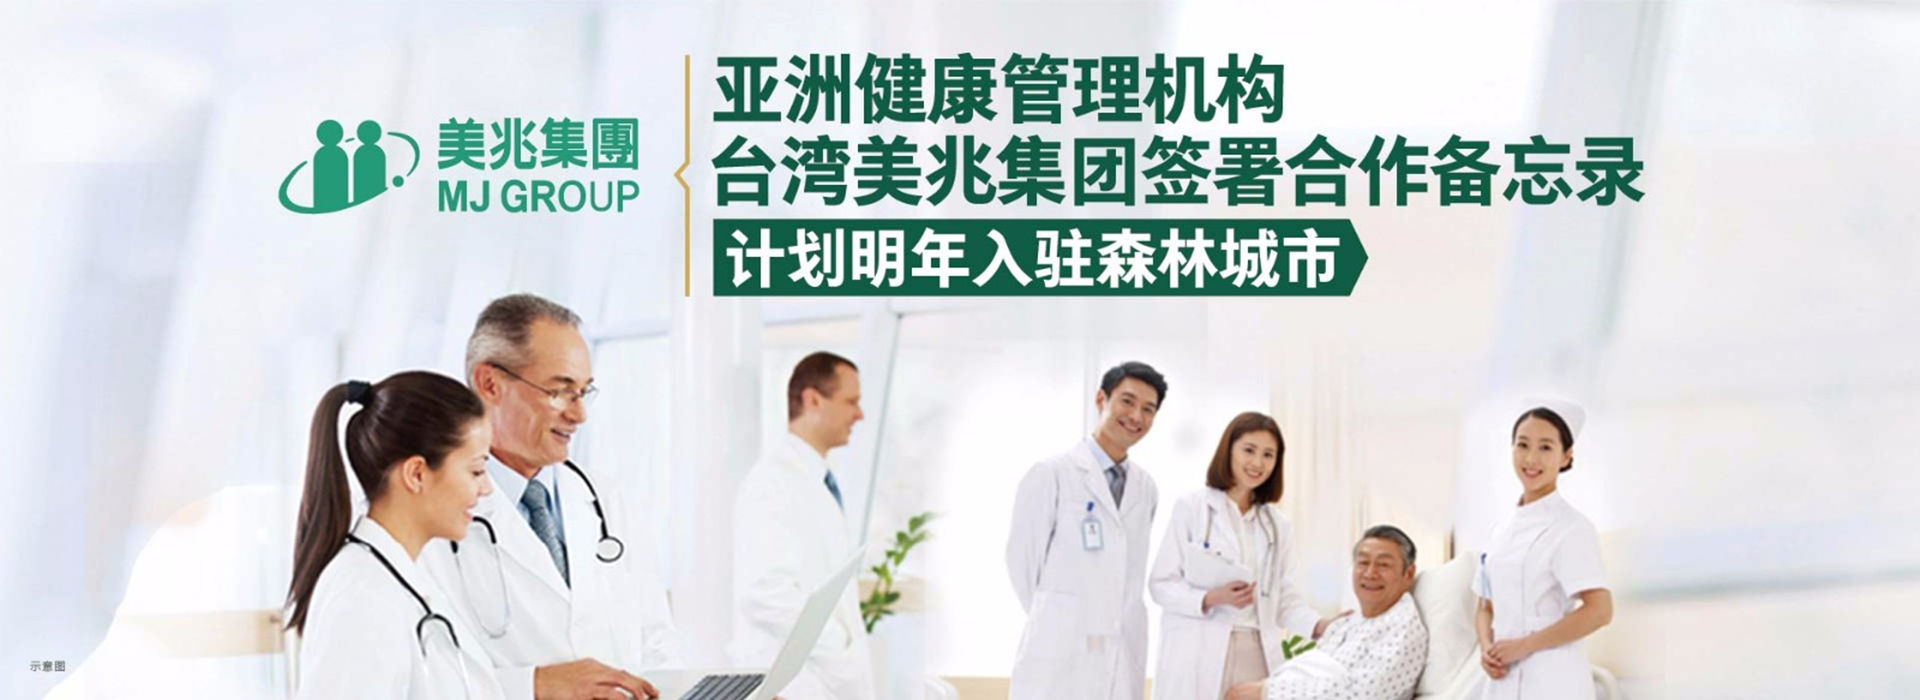 亚洲健康管理机构——台湾美兆集团计划入驻www.4136.com